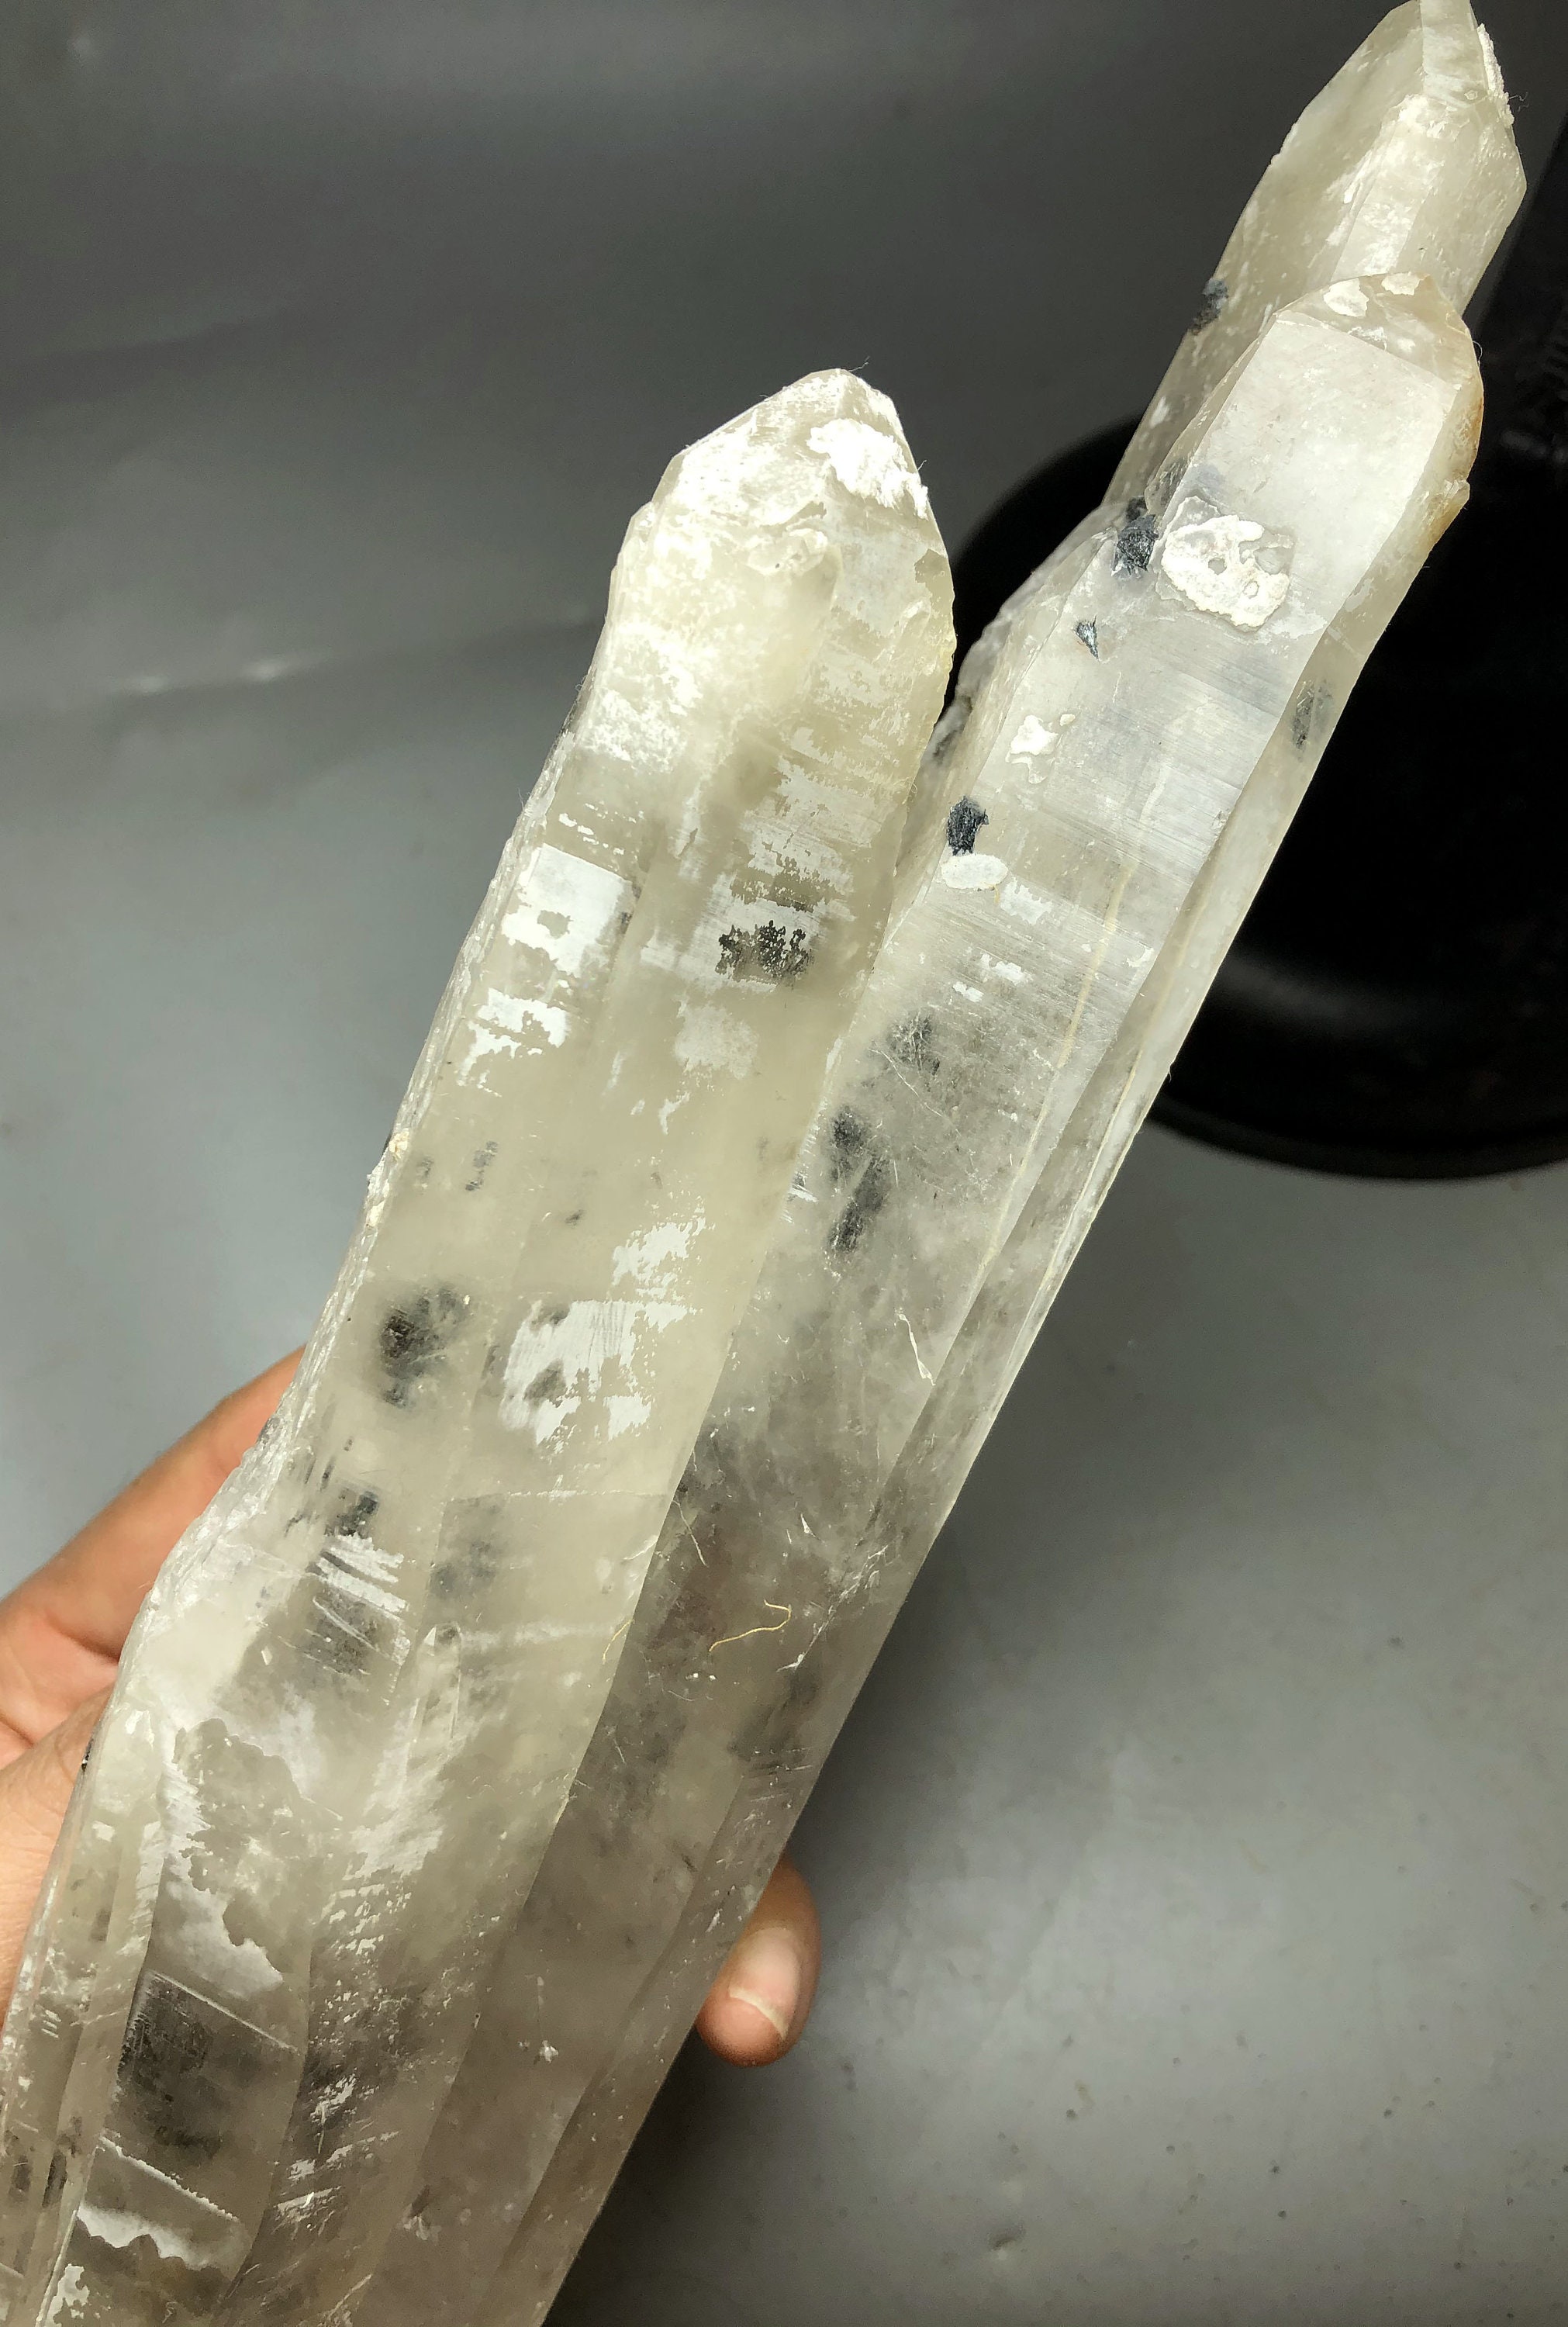 758g NATURAL White QUARTZ Crystal & Specularite Specimen Z911 | Etsy